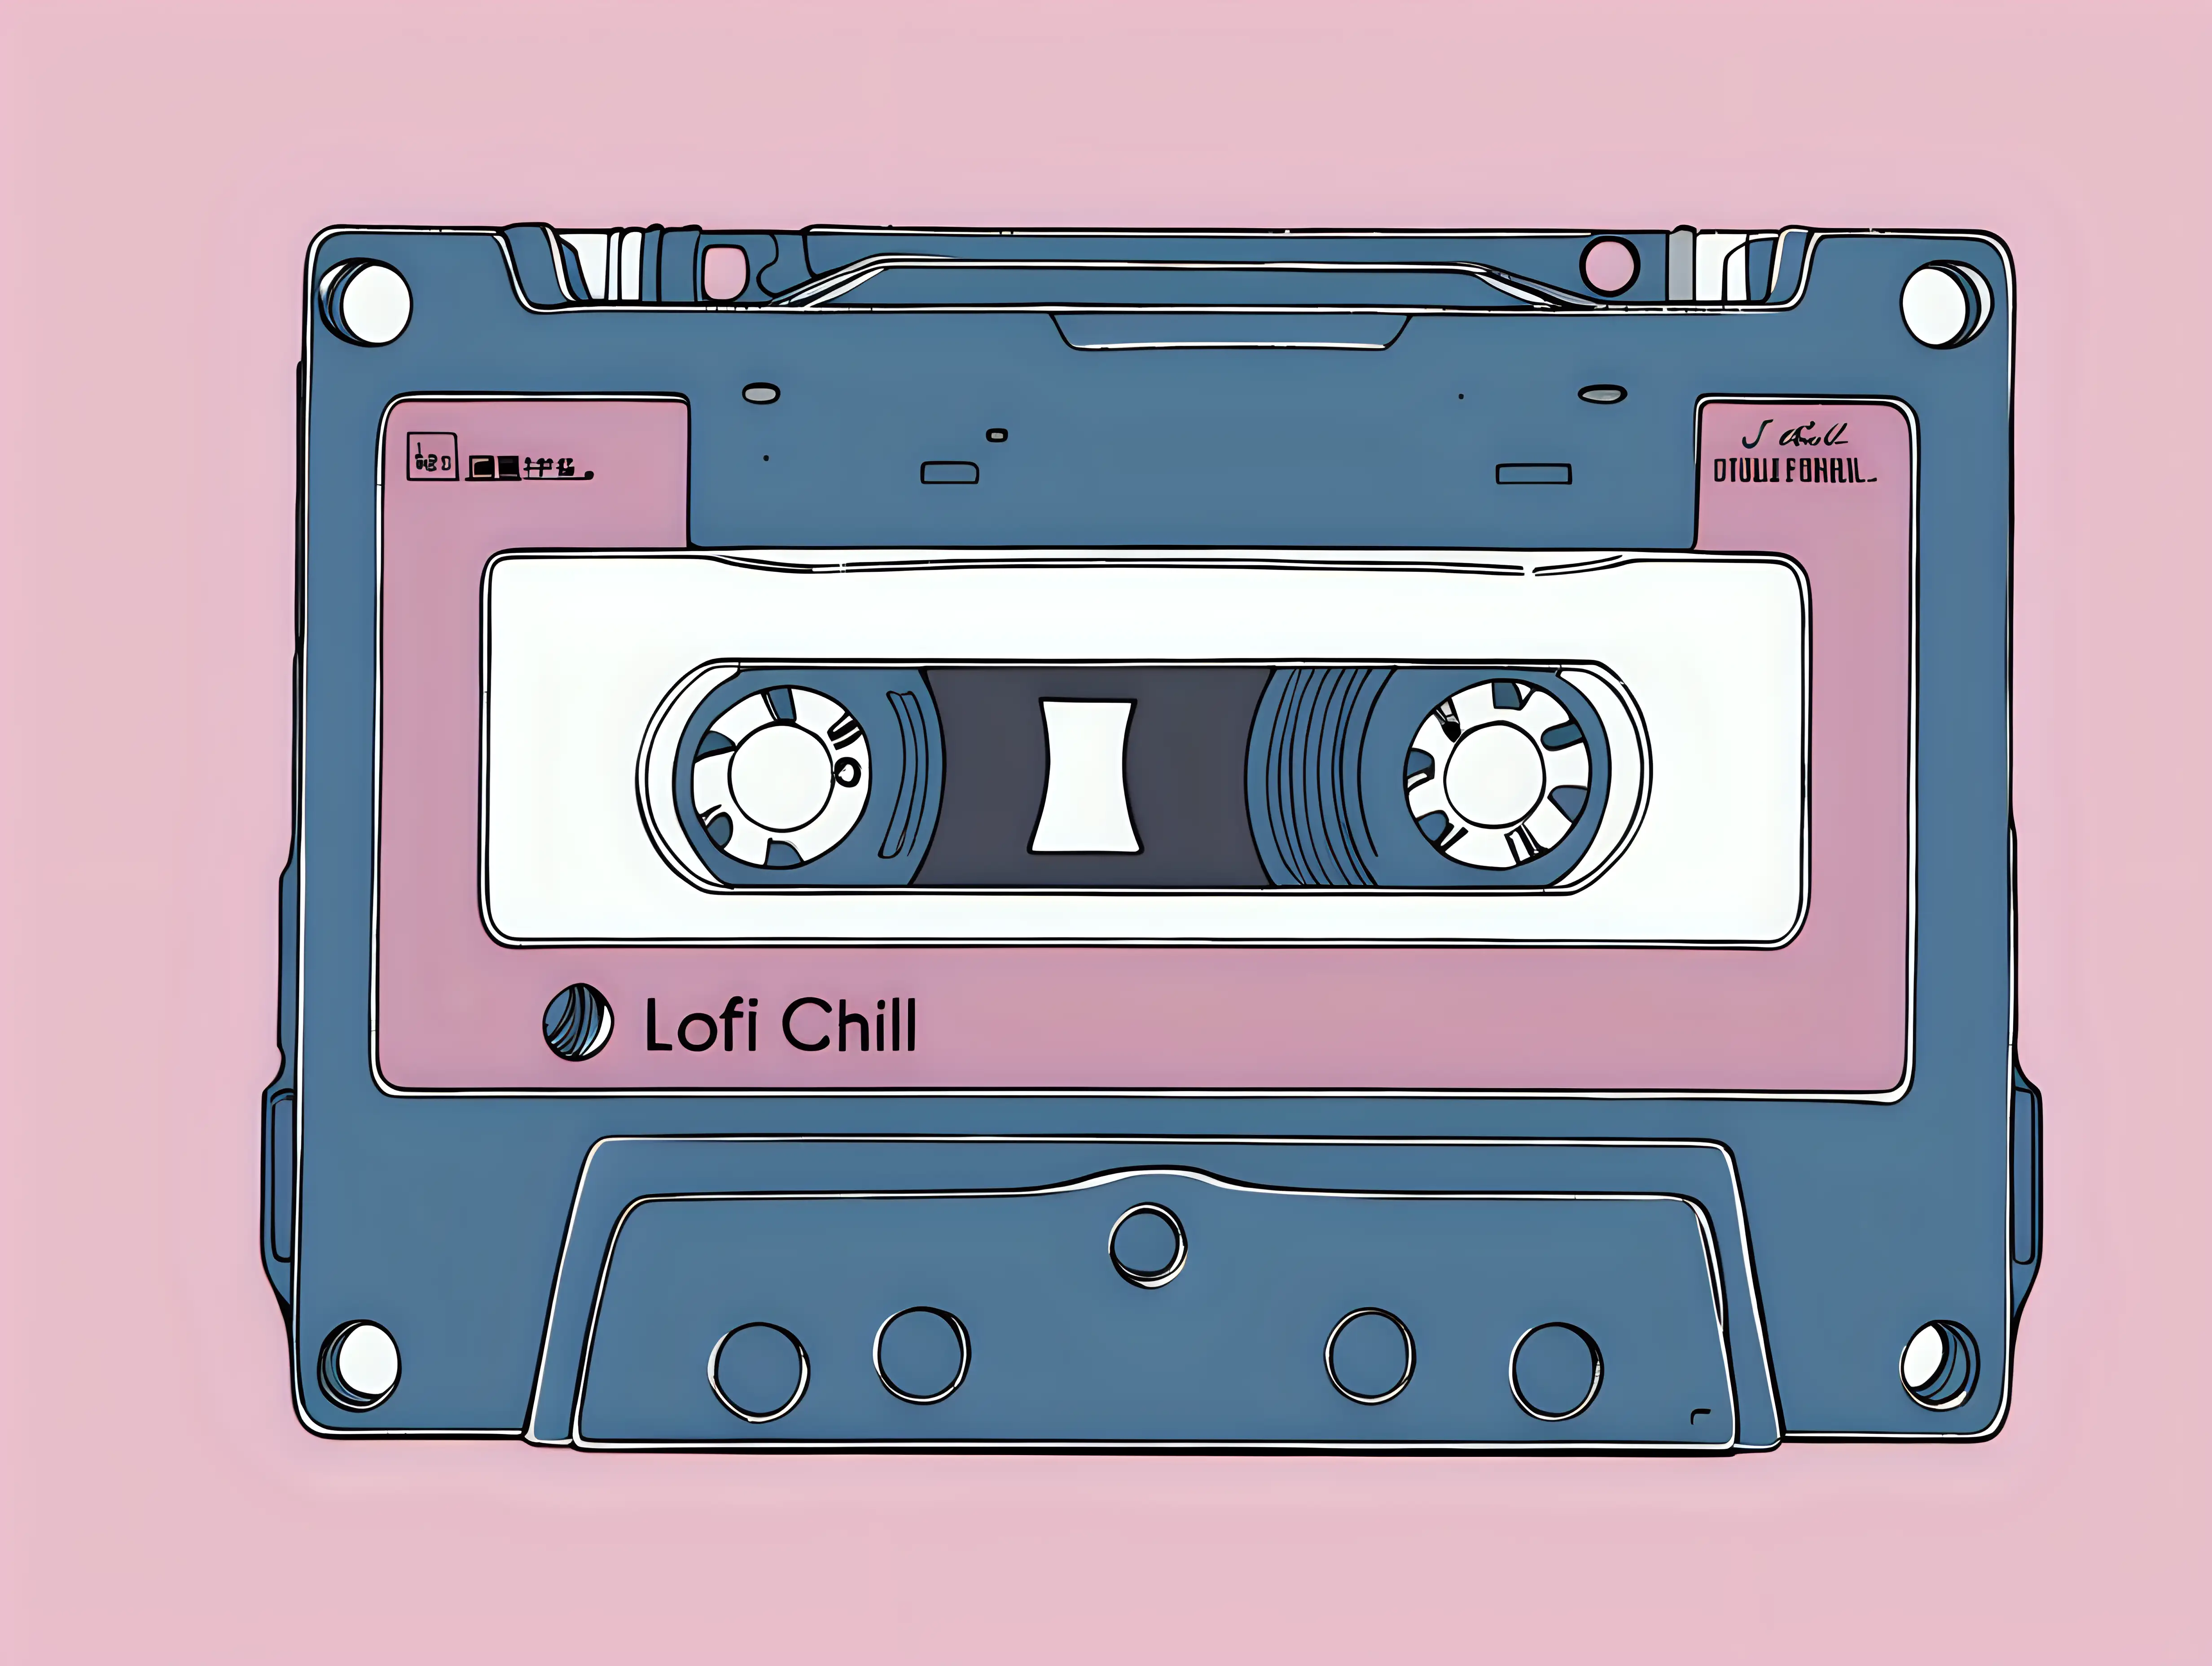 lofi chill, a single cassette